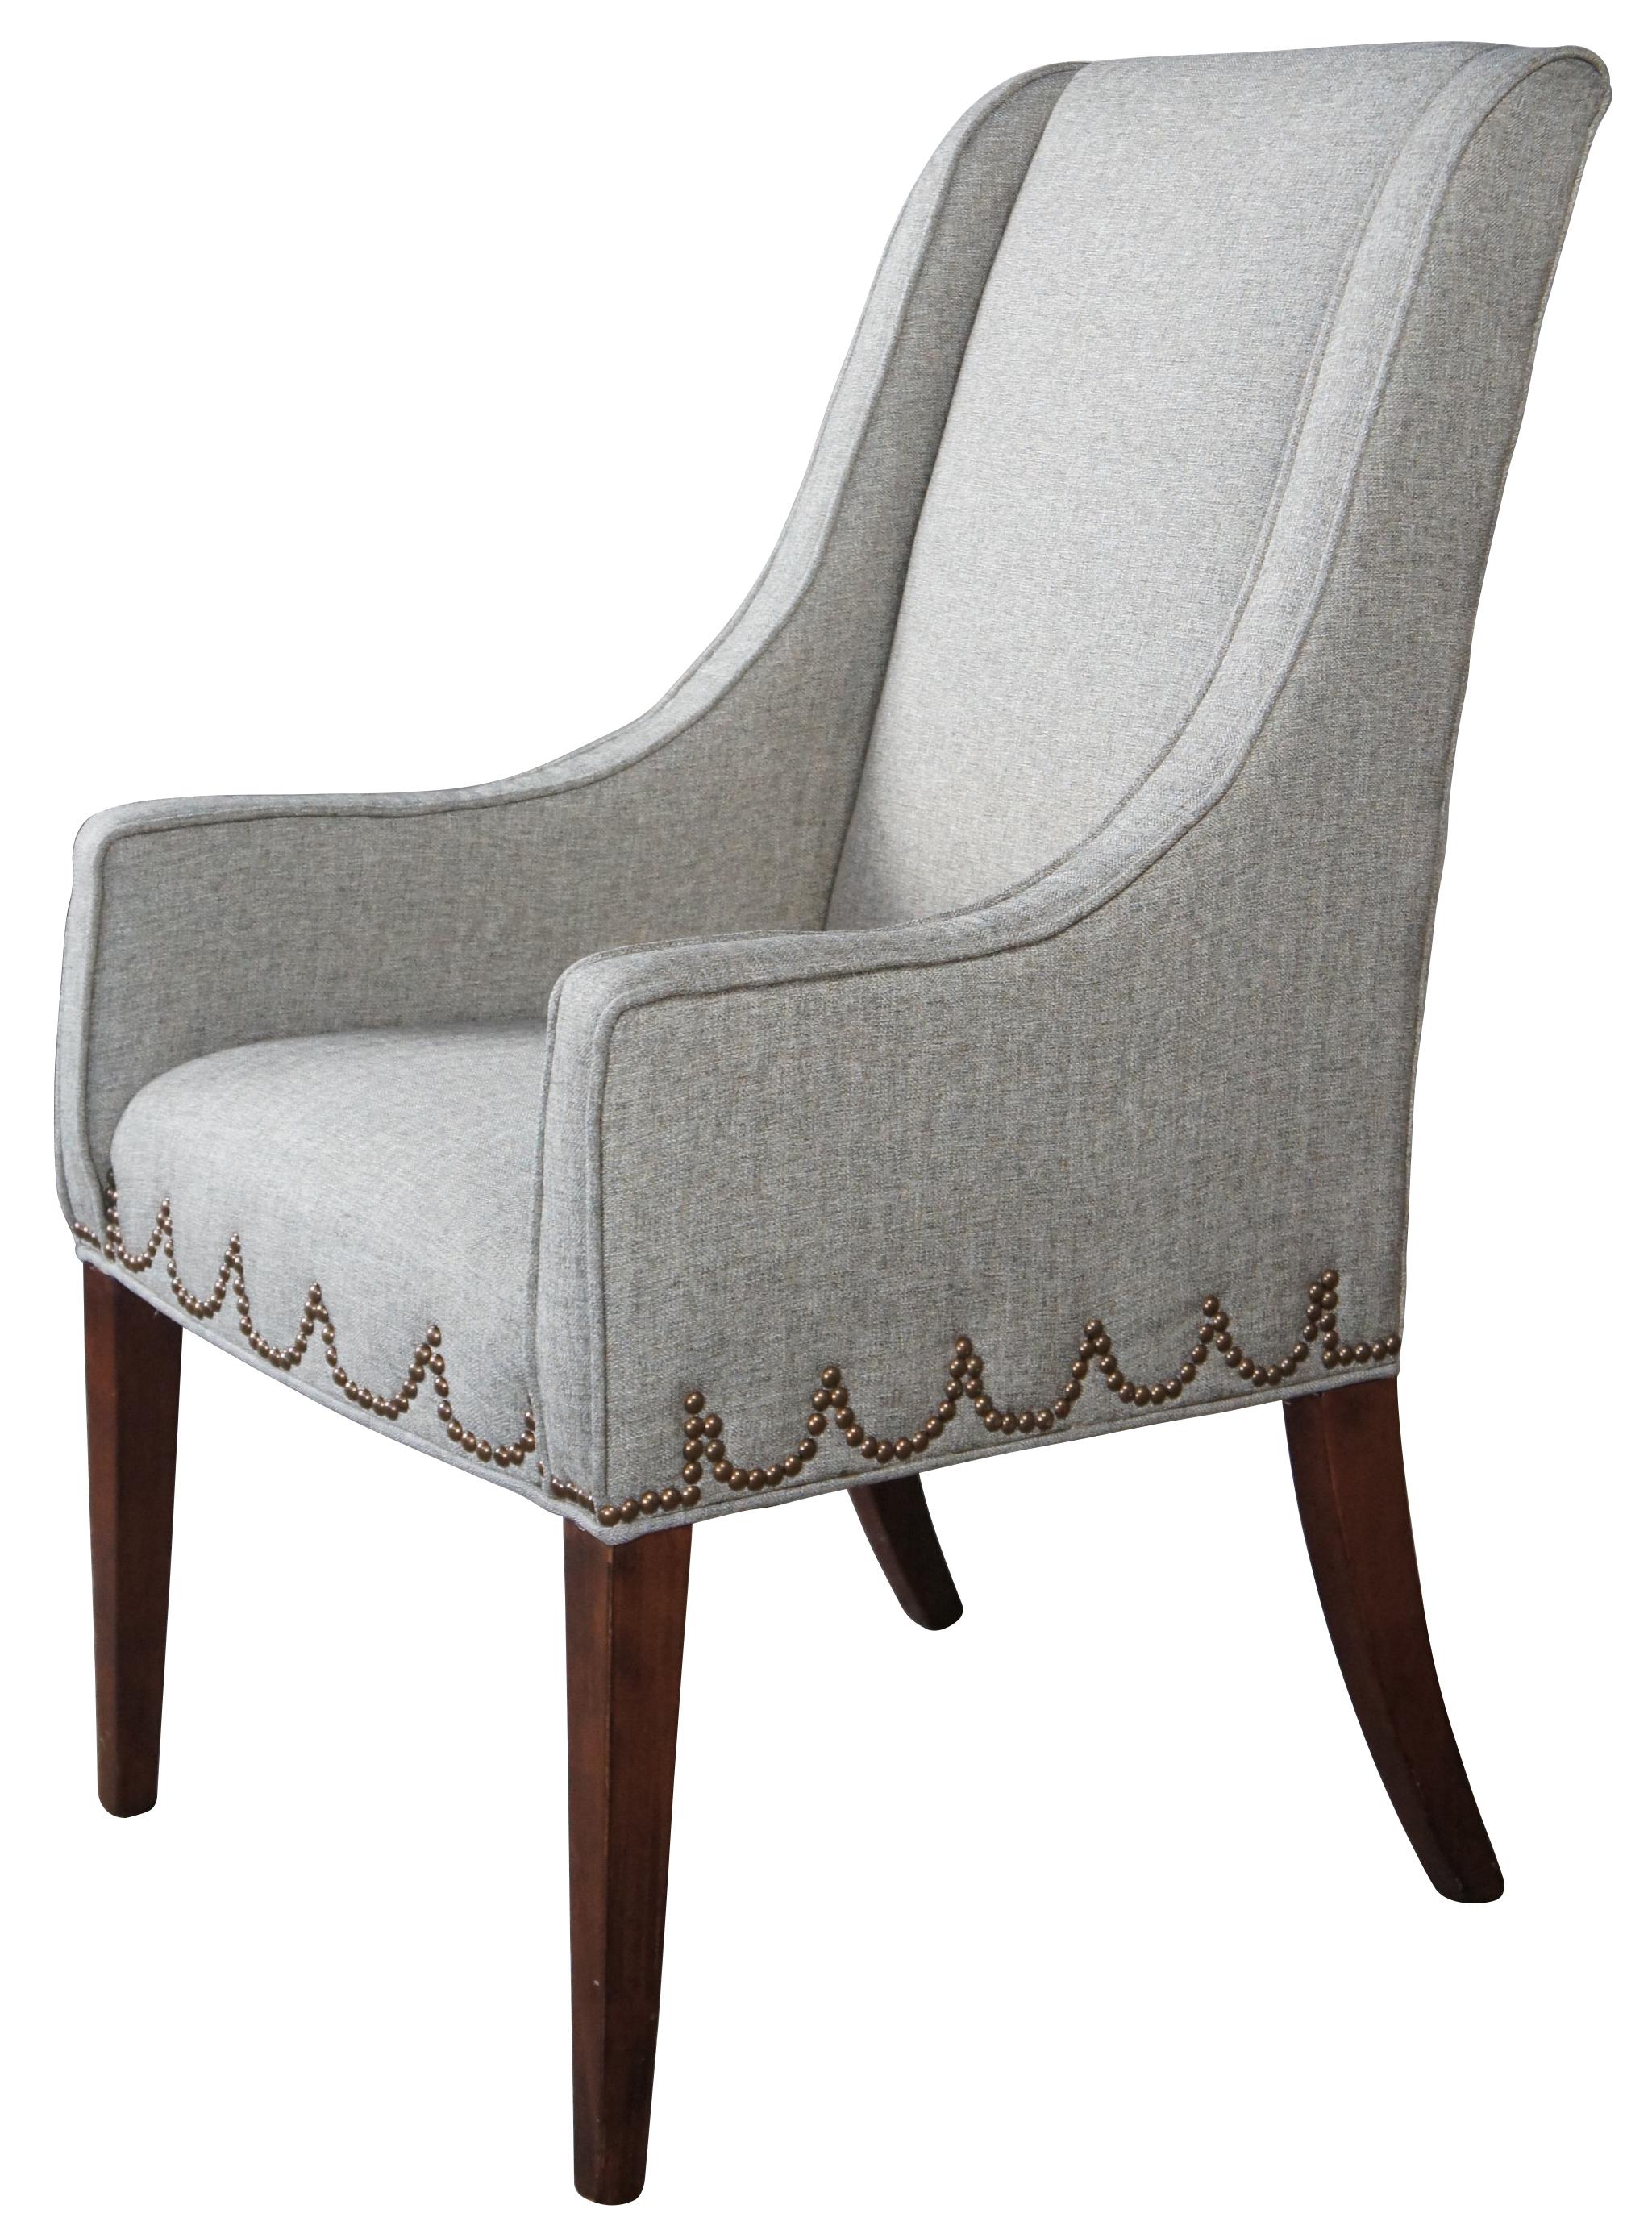 Universalmöbel Grauer Pantoffelsessel. Anmutige Linien mit Hepplewhite-Styling, Nagelkopfverzierungen und quadratischen, konischen Beinen aus Mahagoni.
 